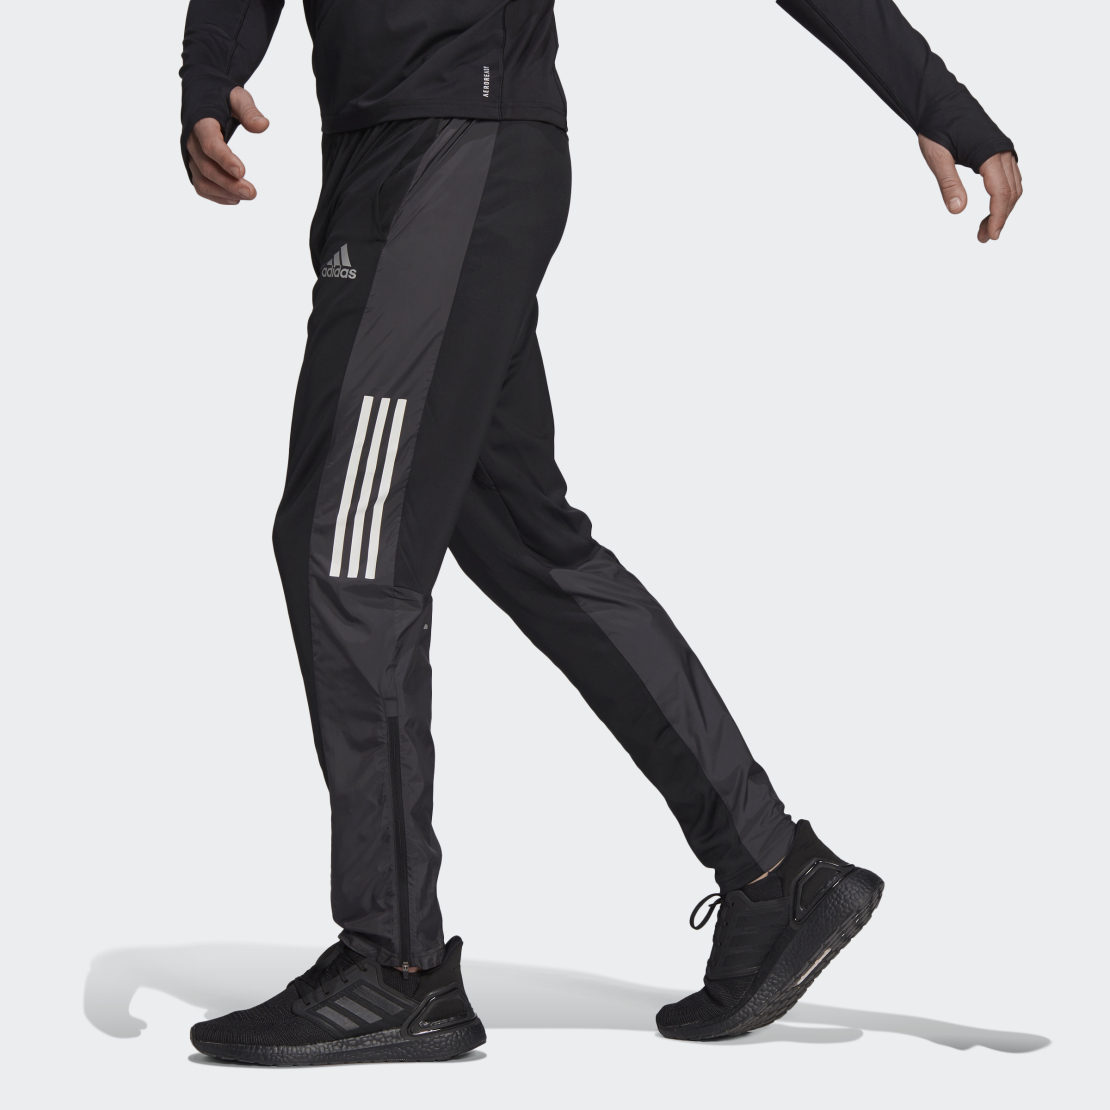 מכנס אדידס ניילון לגבר | Adidas Astro Pant Knit